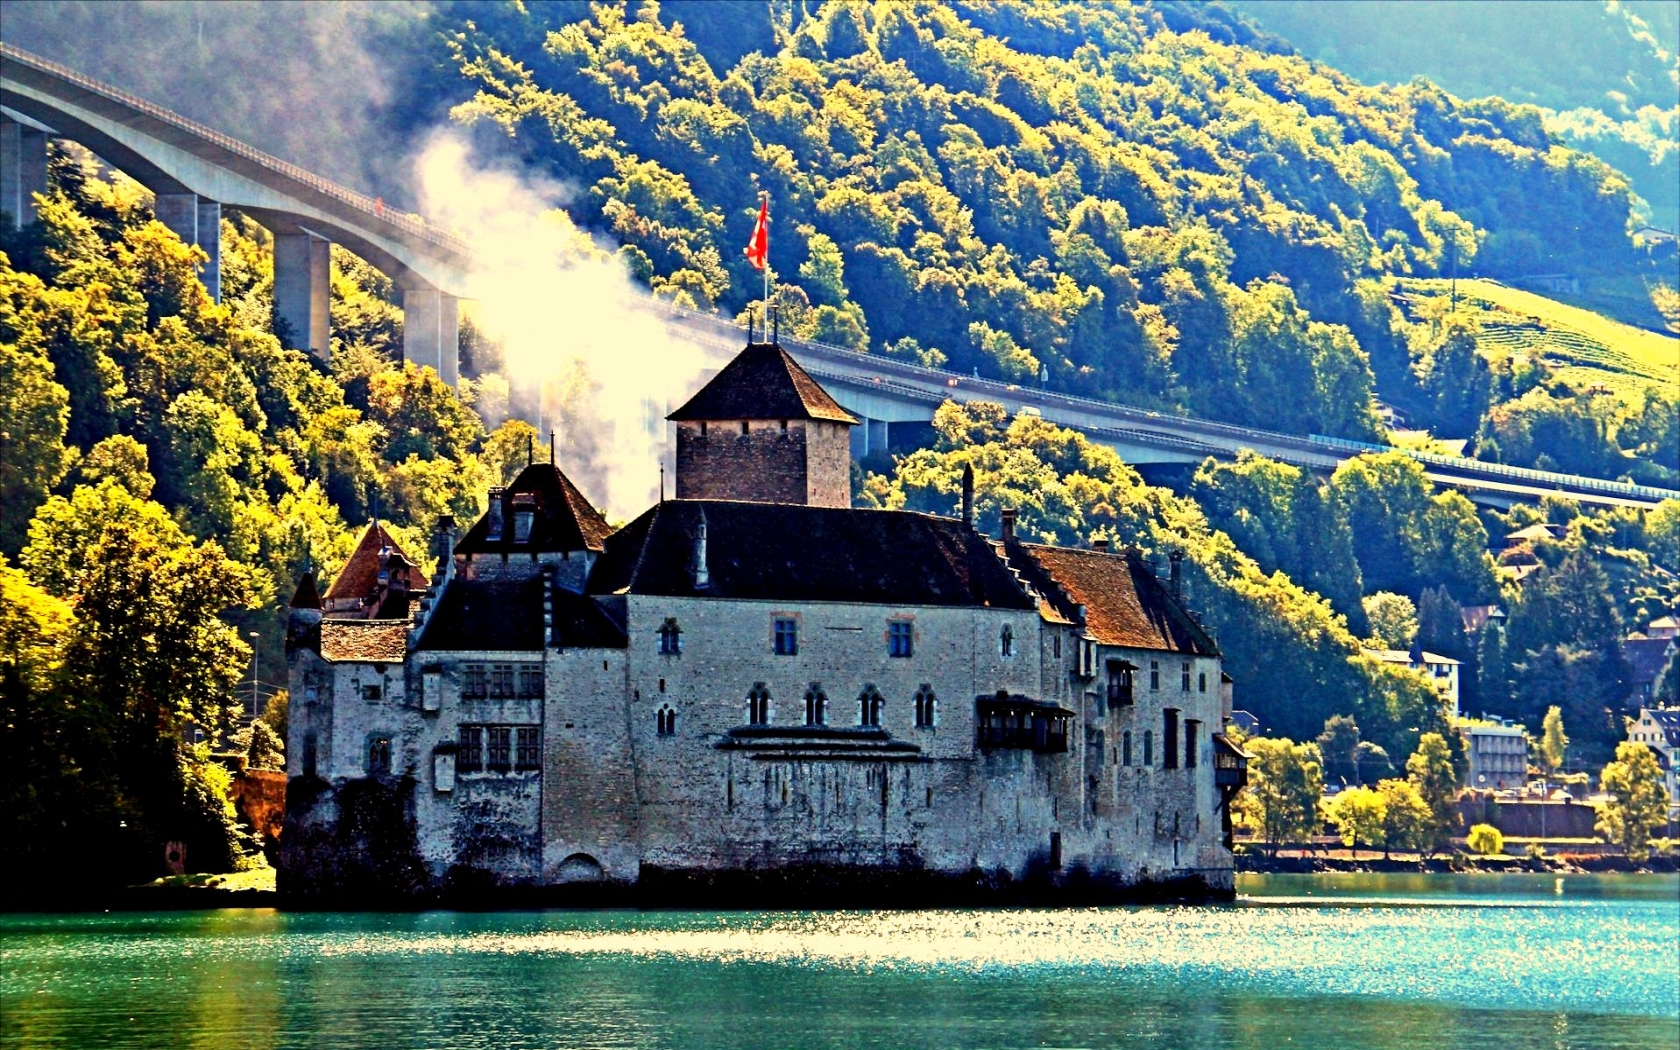 man made, château de chillon, castle, switzerland, veytaux, castles